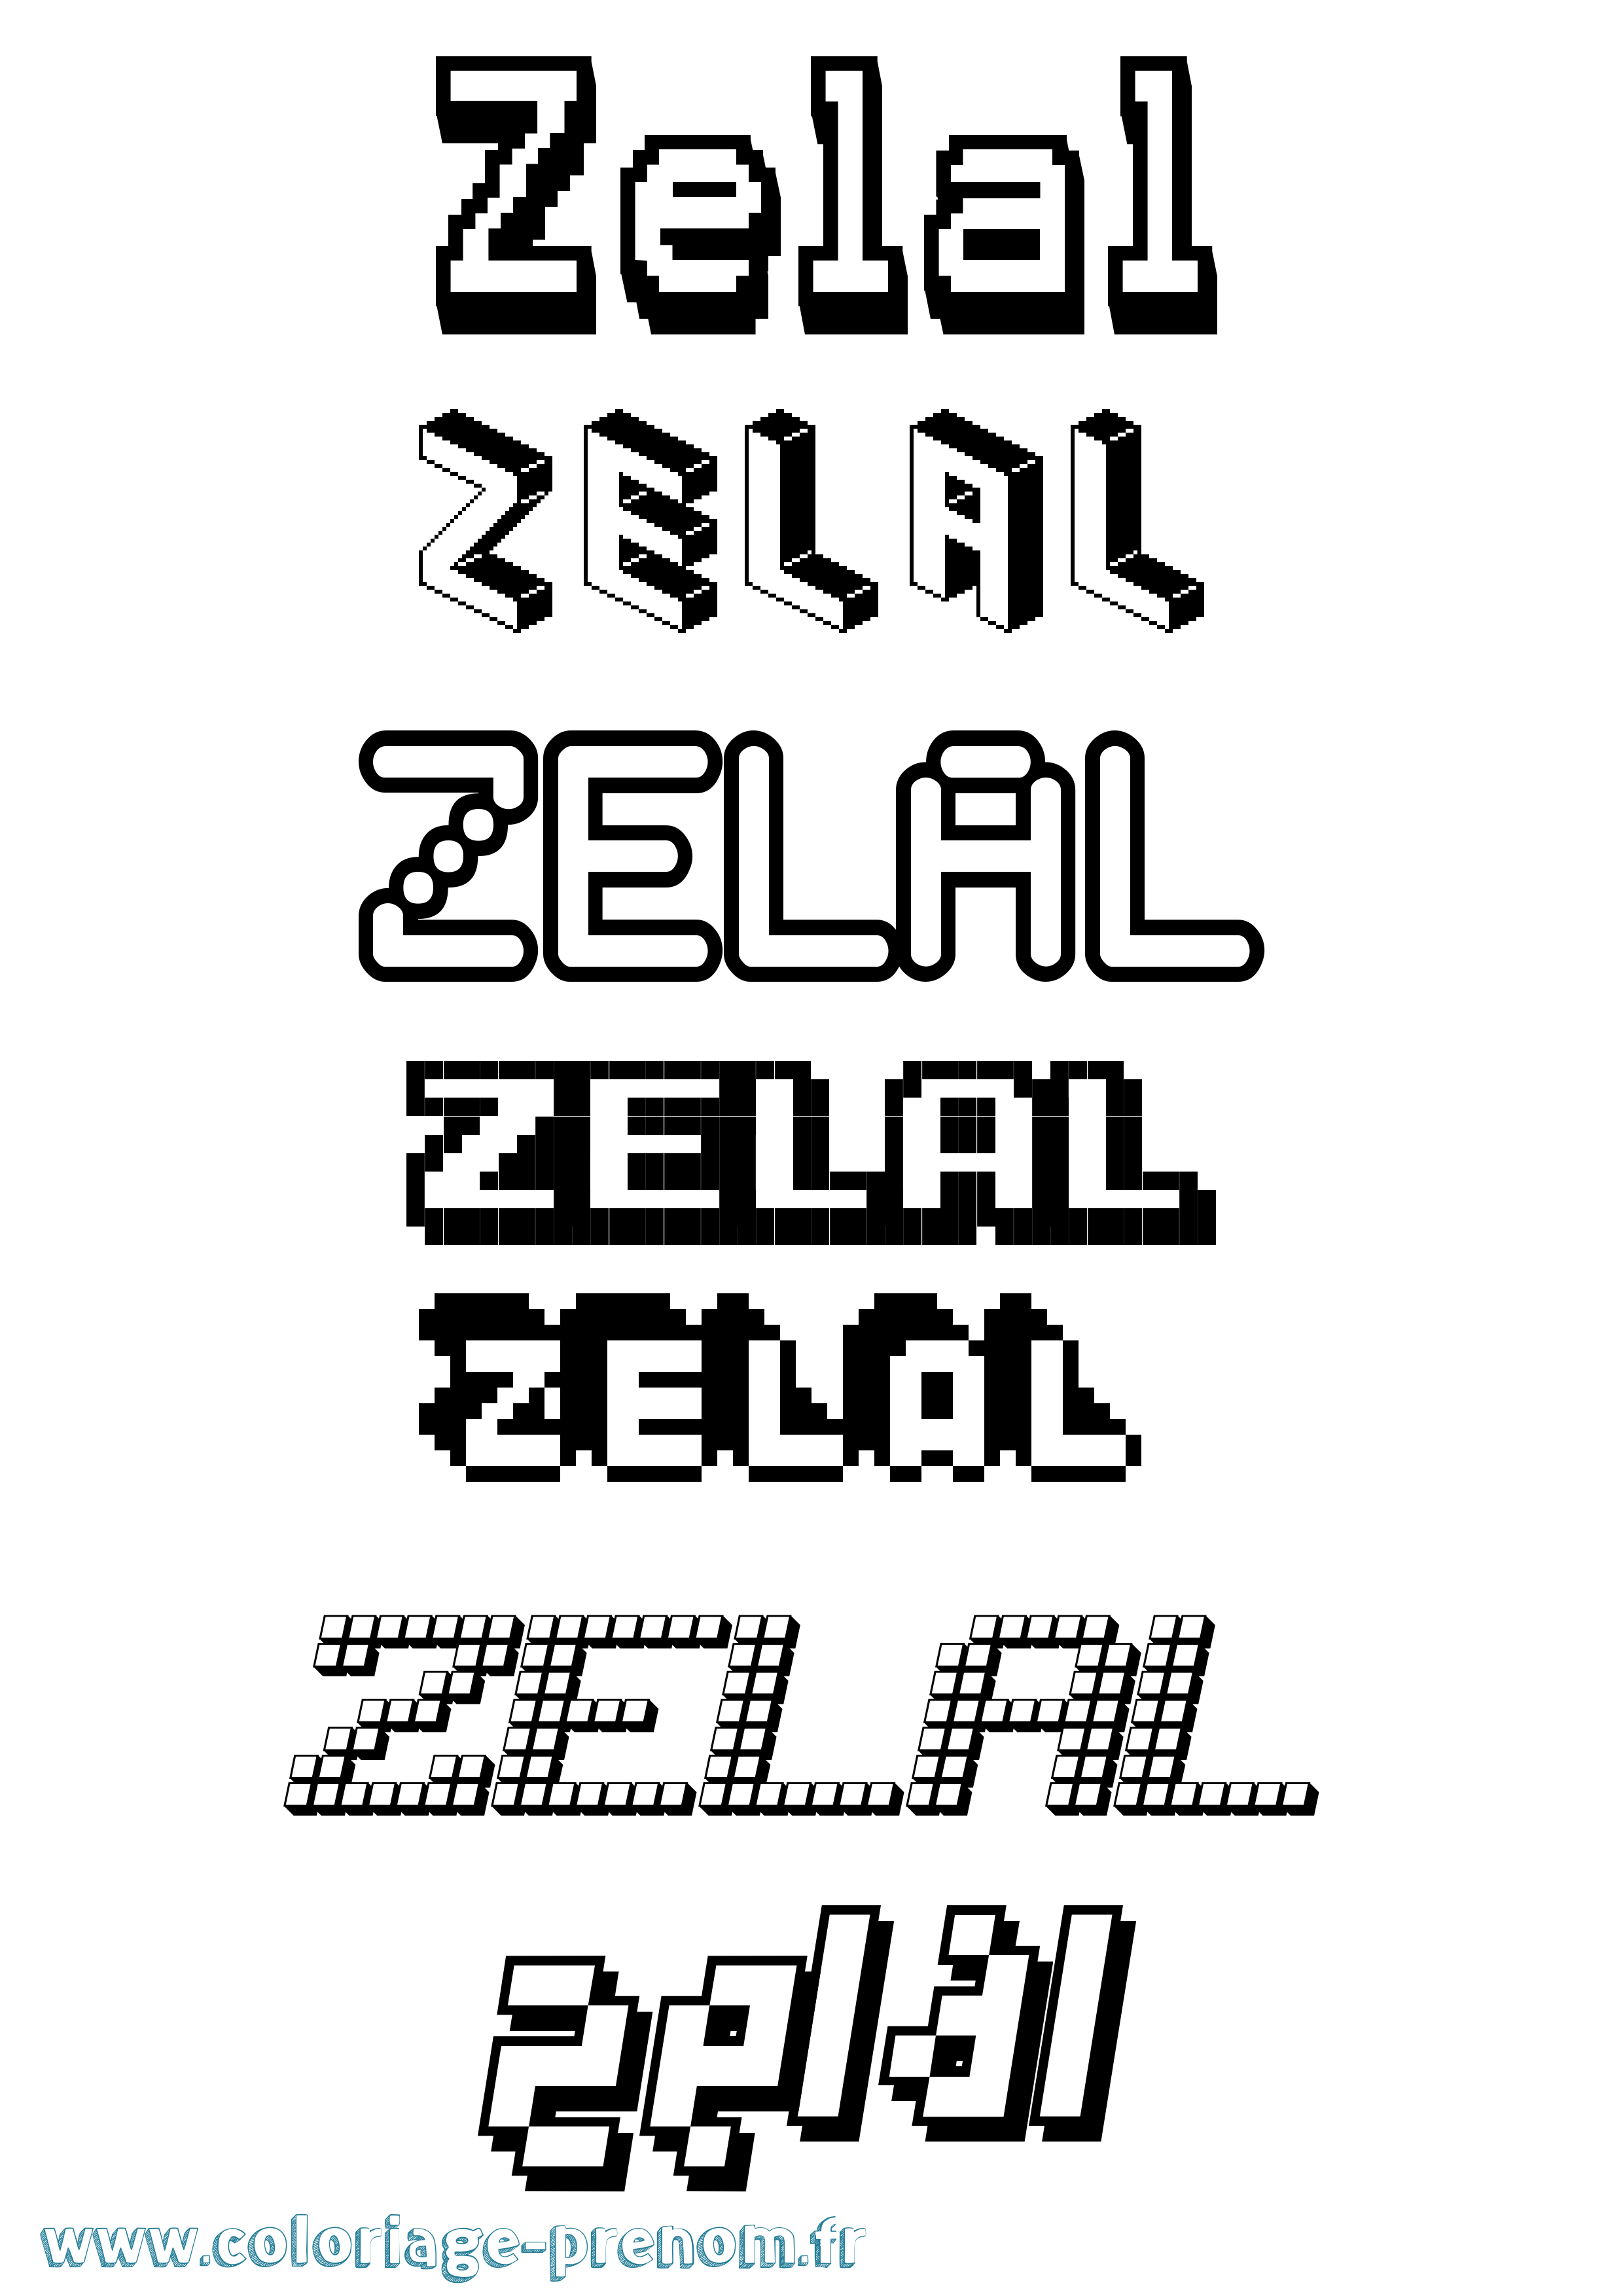 Coloriage prénom Zelal Pixel